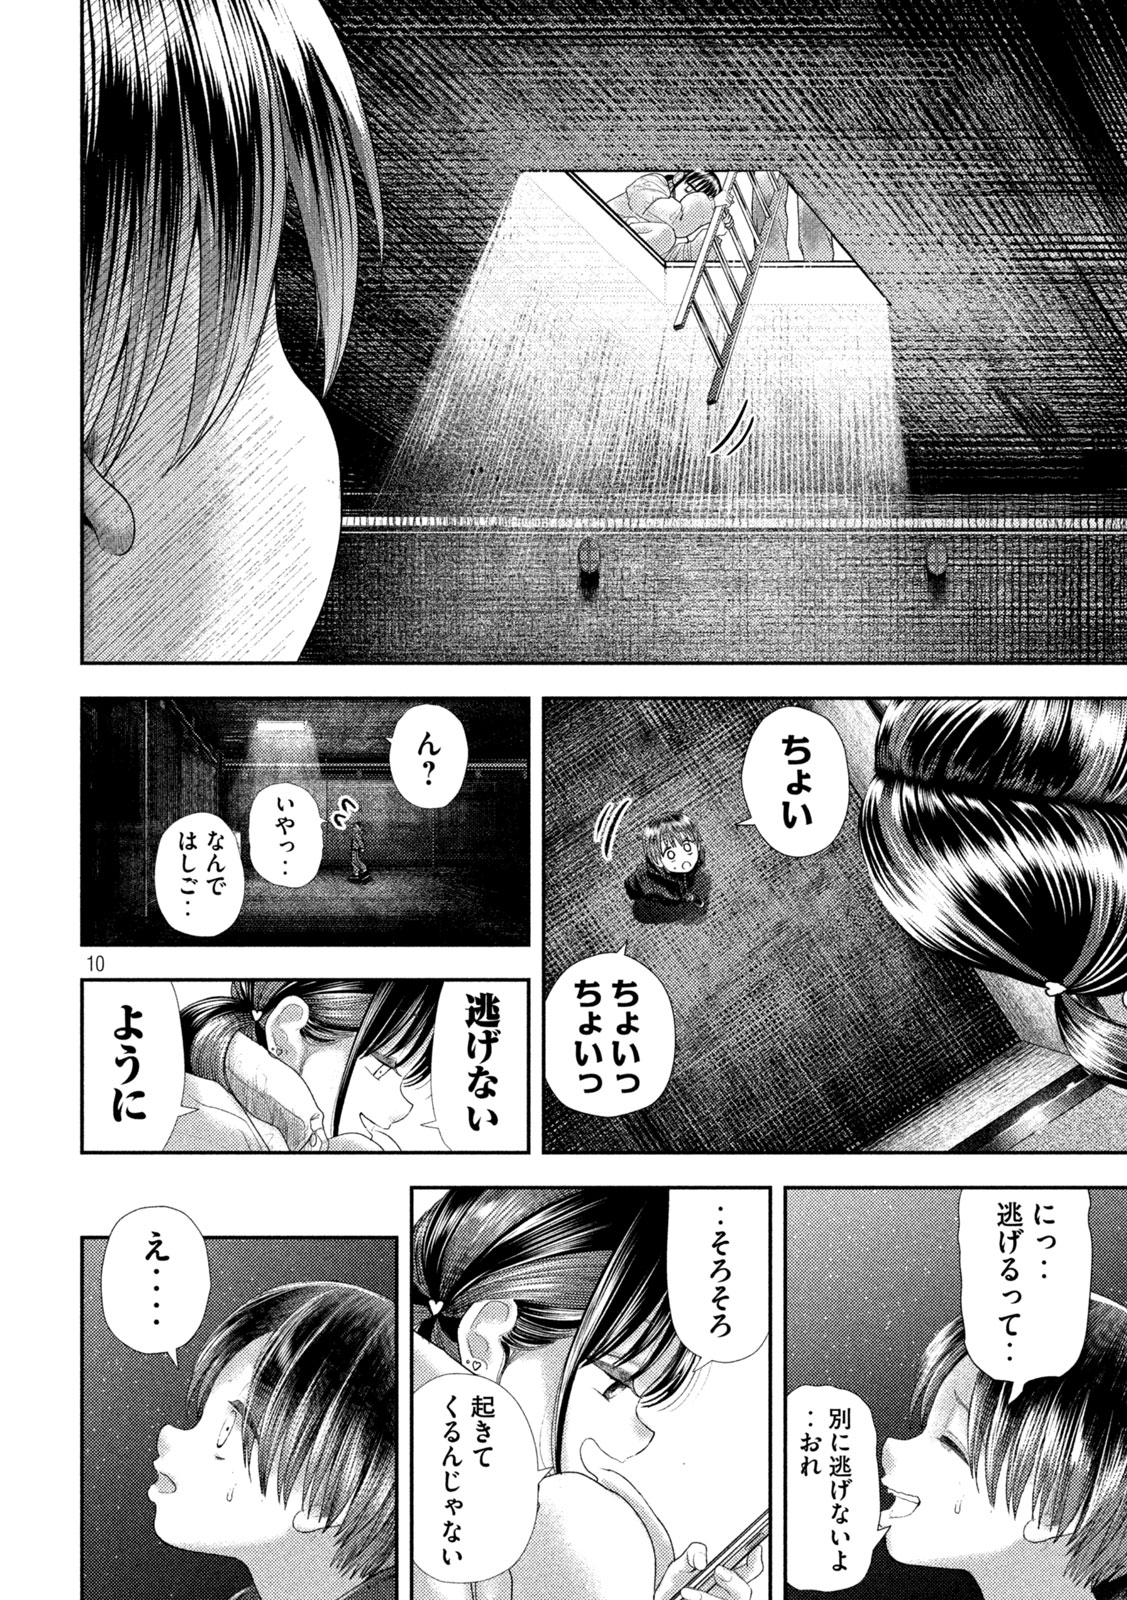 Nezumi no Koi - Chapter 32 - Page 10